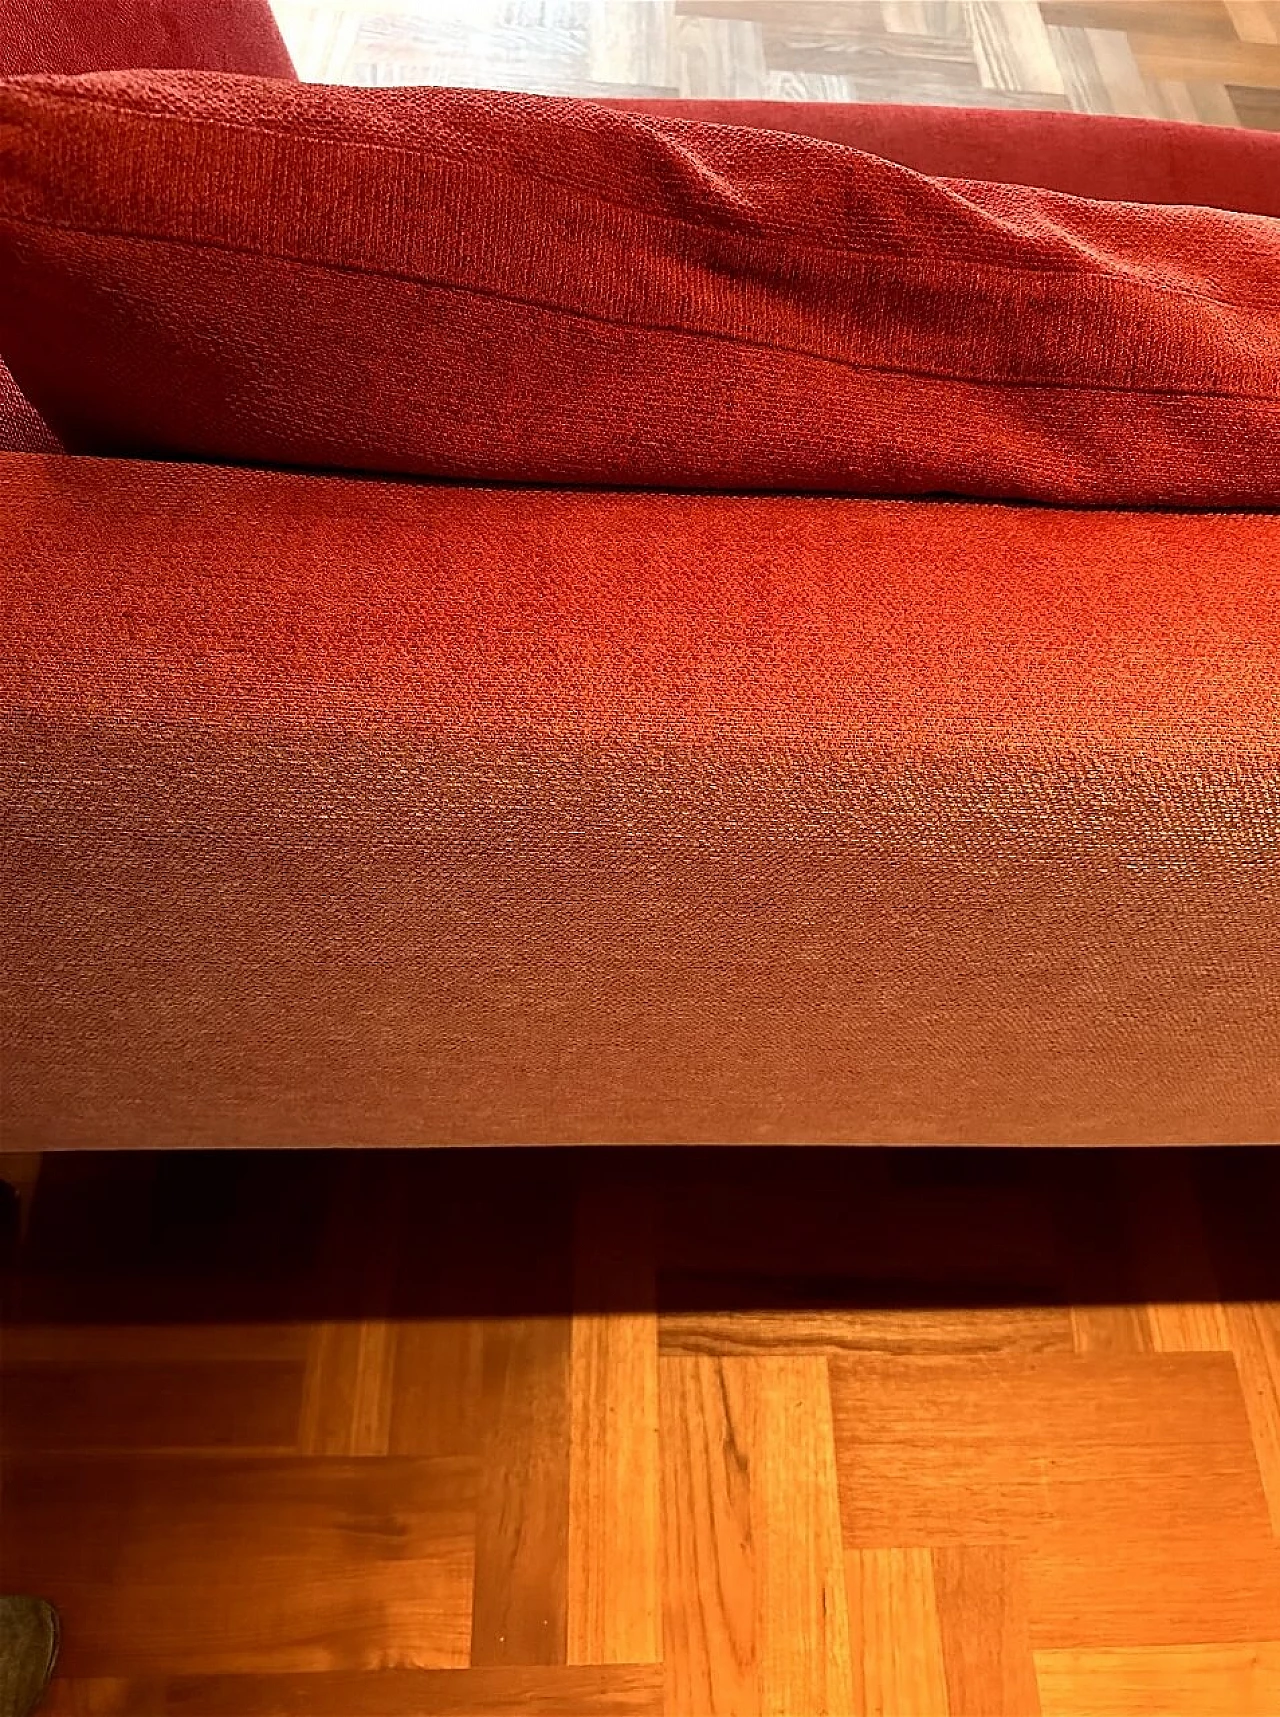 CH228 Charles sofa in red Maxalto-Cat cotton by Antonio Citterio for B&B Italia 14